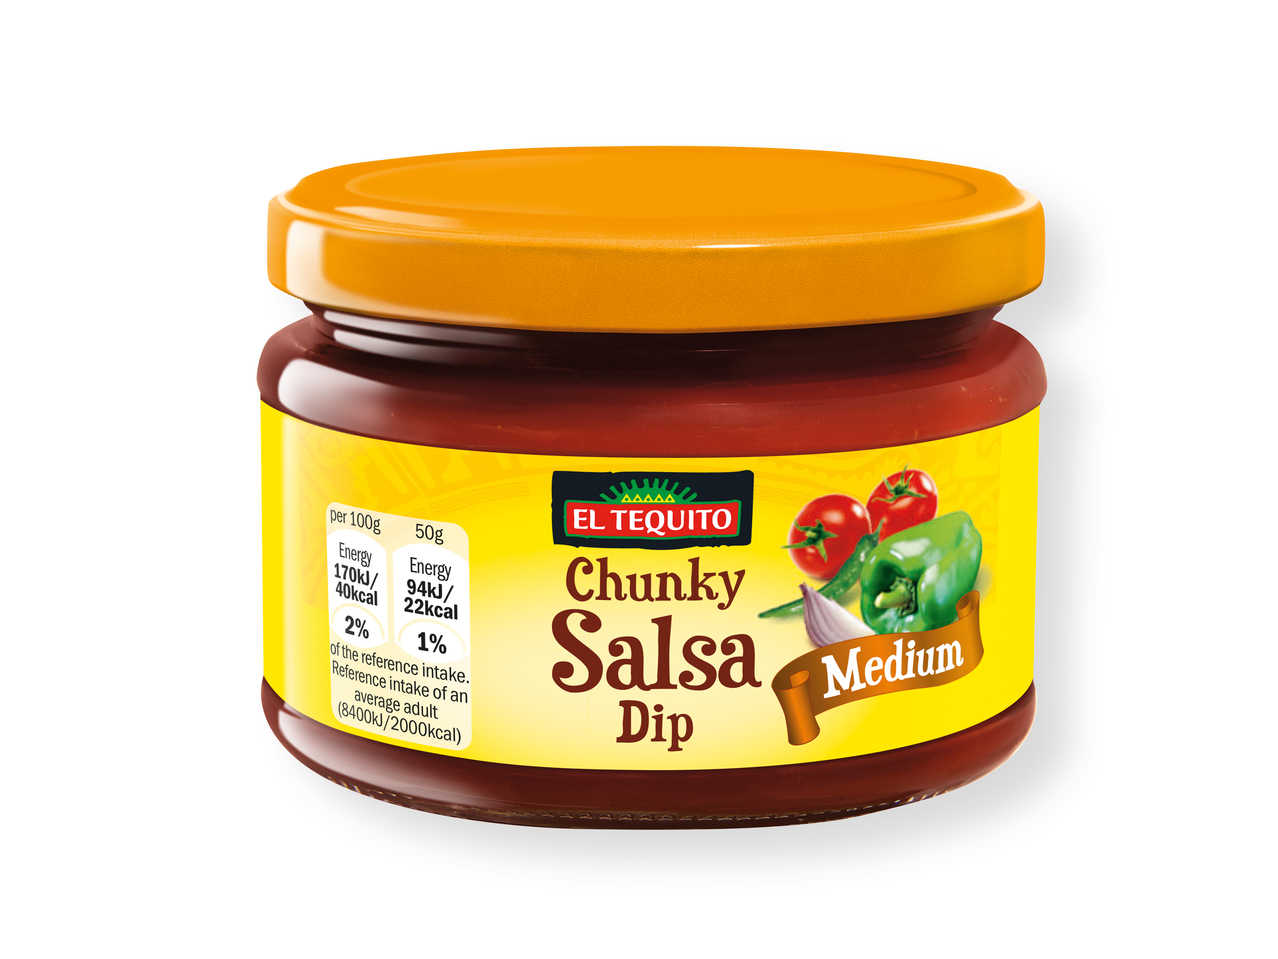 'El Tequito(R)' Salsas dip